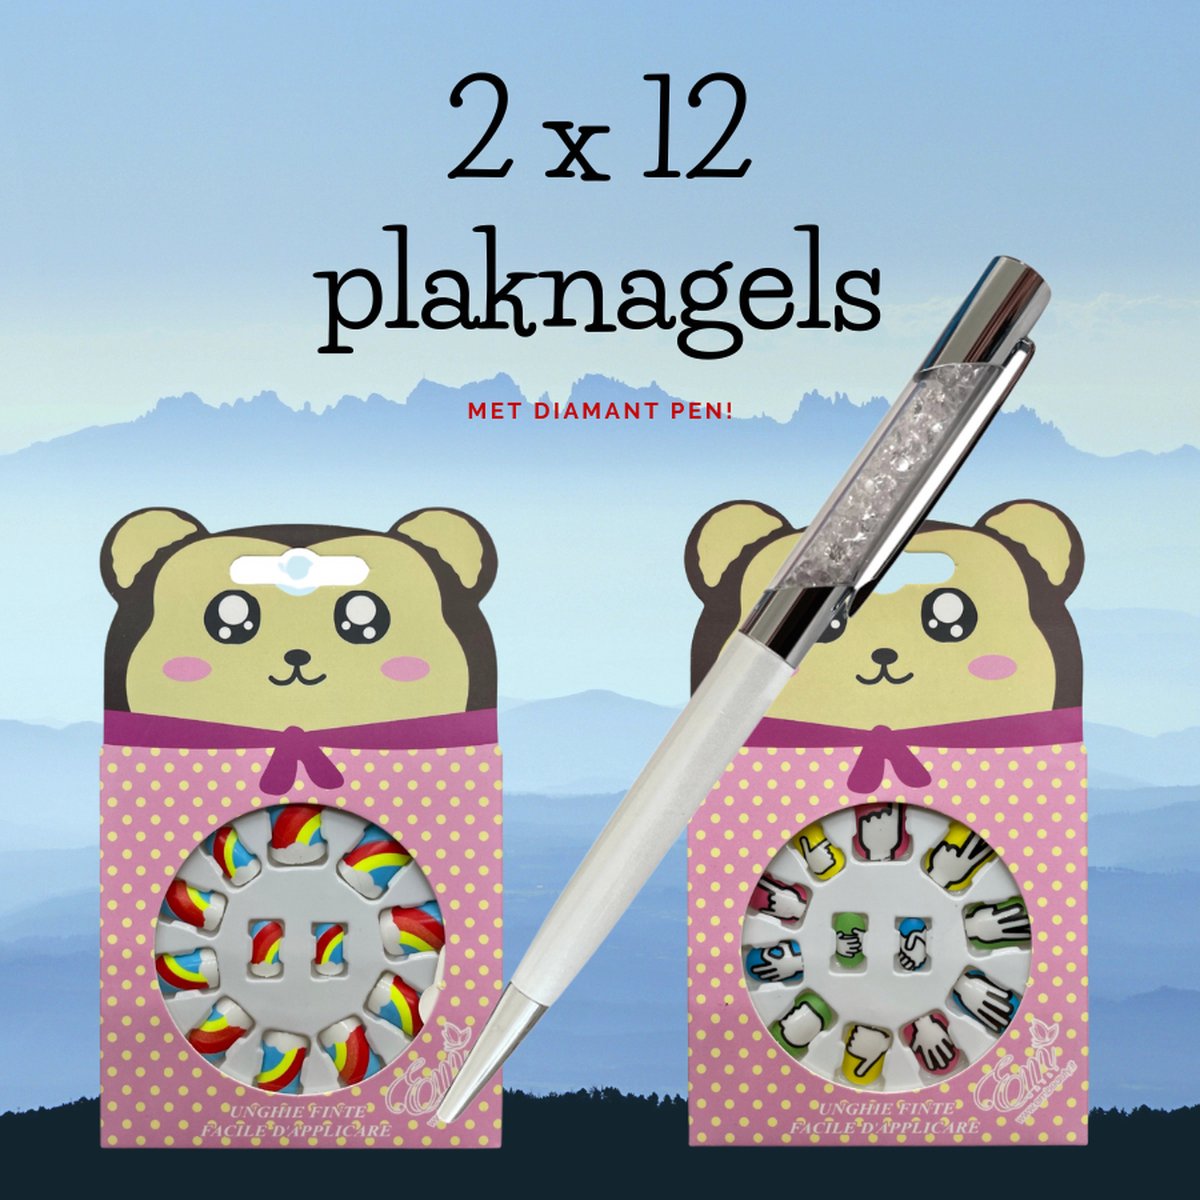 Plaknagels Duoset | 2 x 12 Nagels | Met Diamant Pen | Geen Lijm Nodig | Regenboog